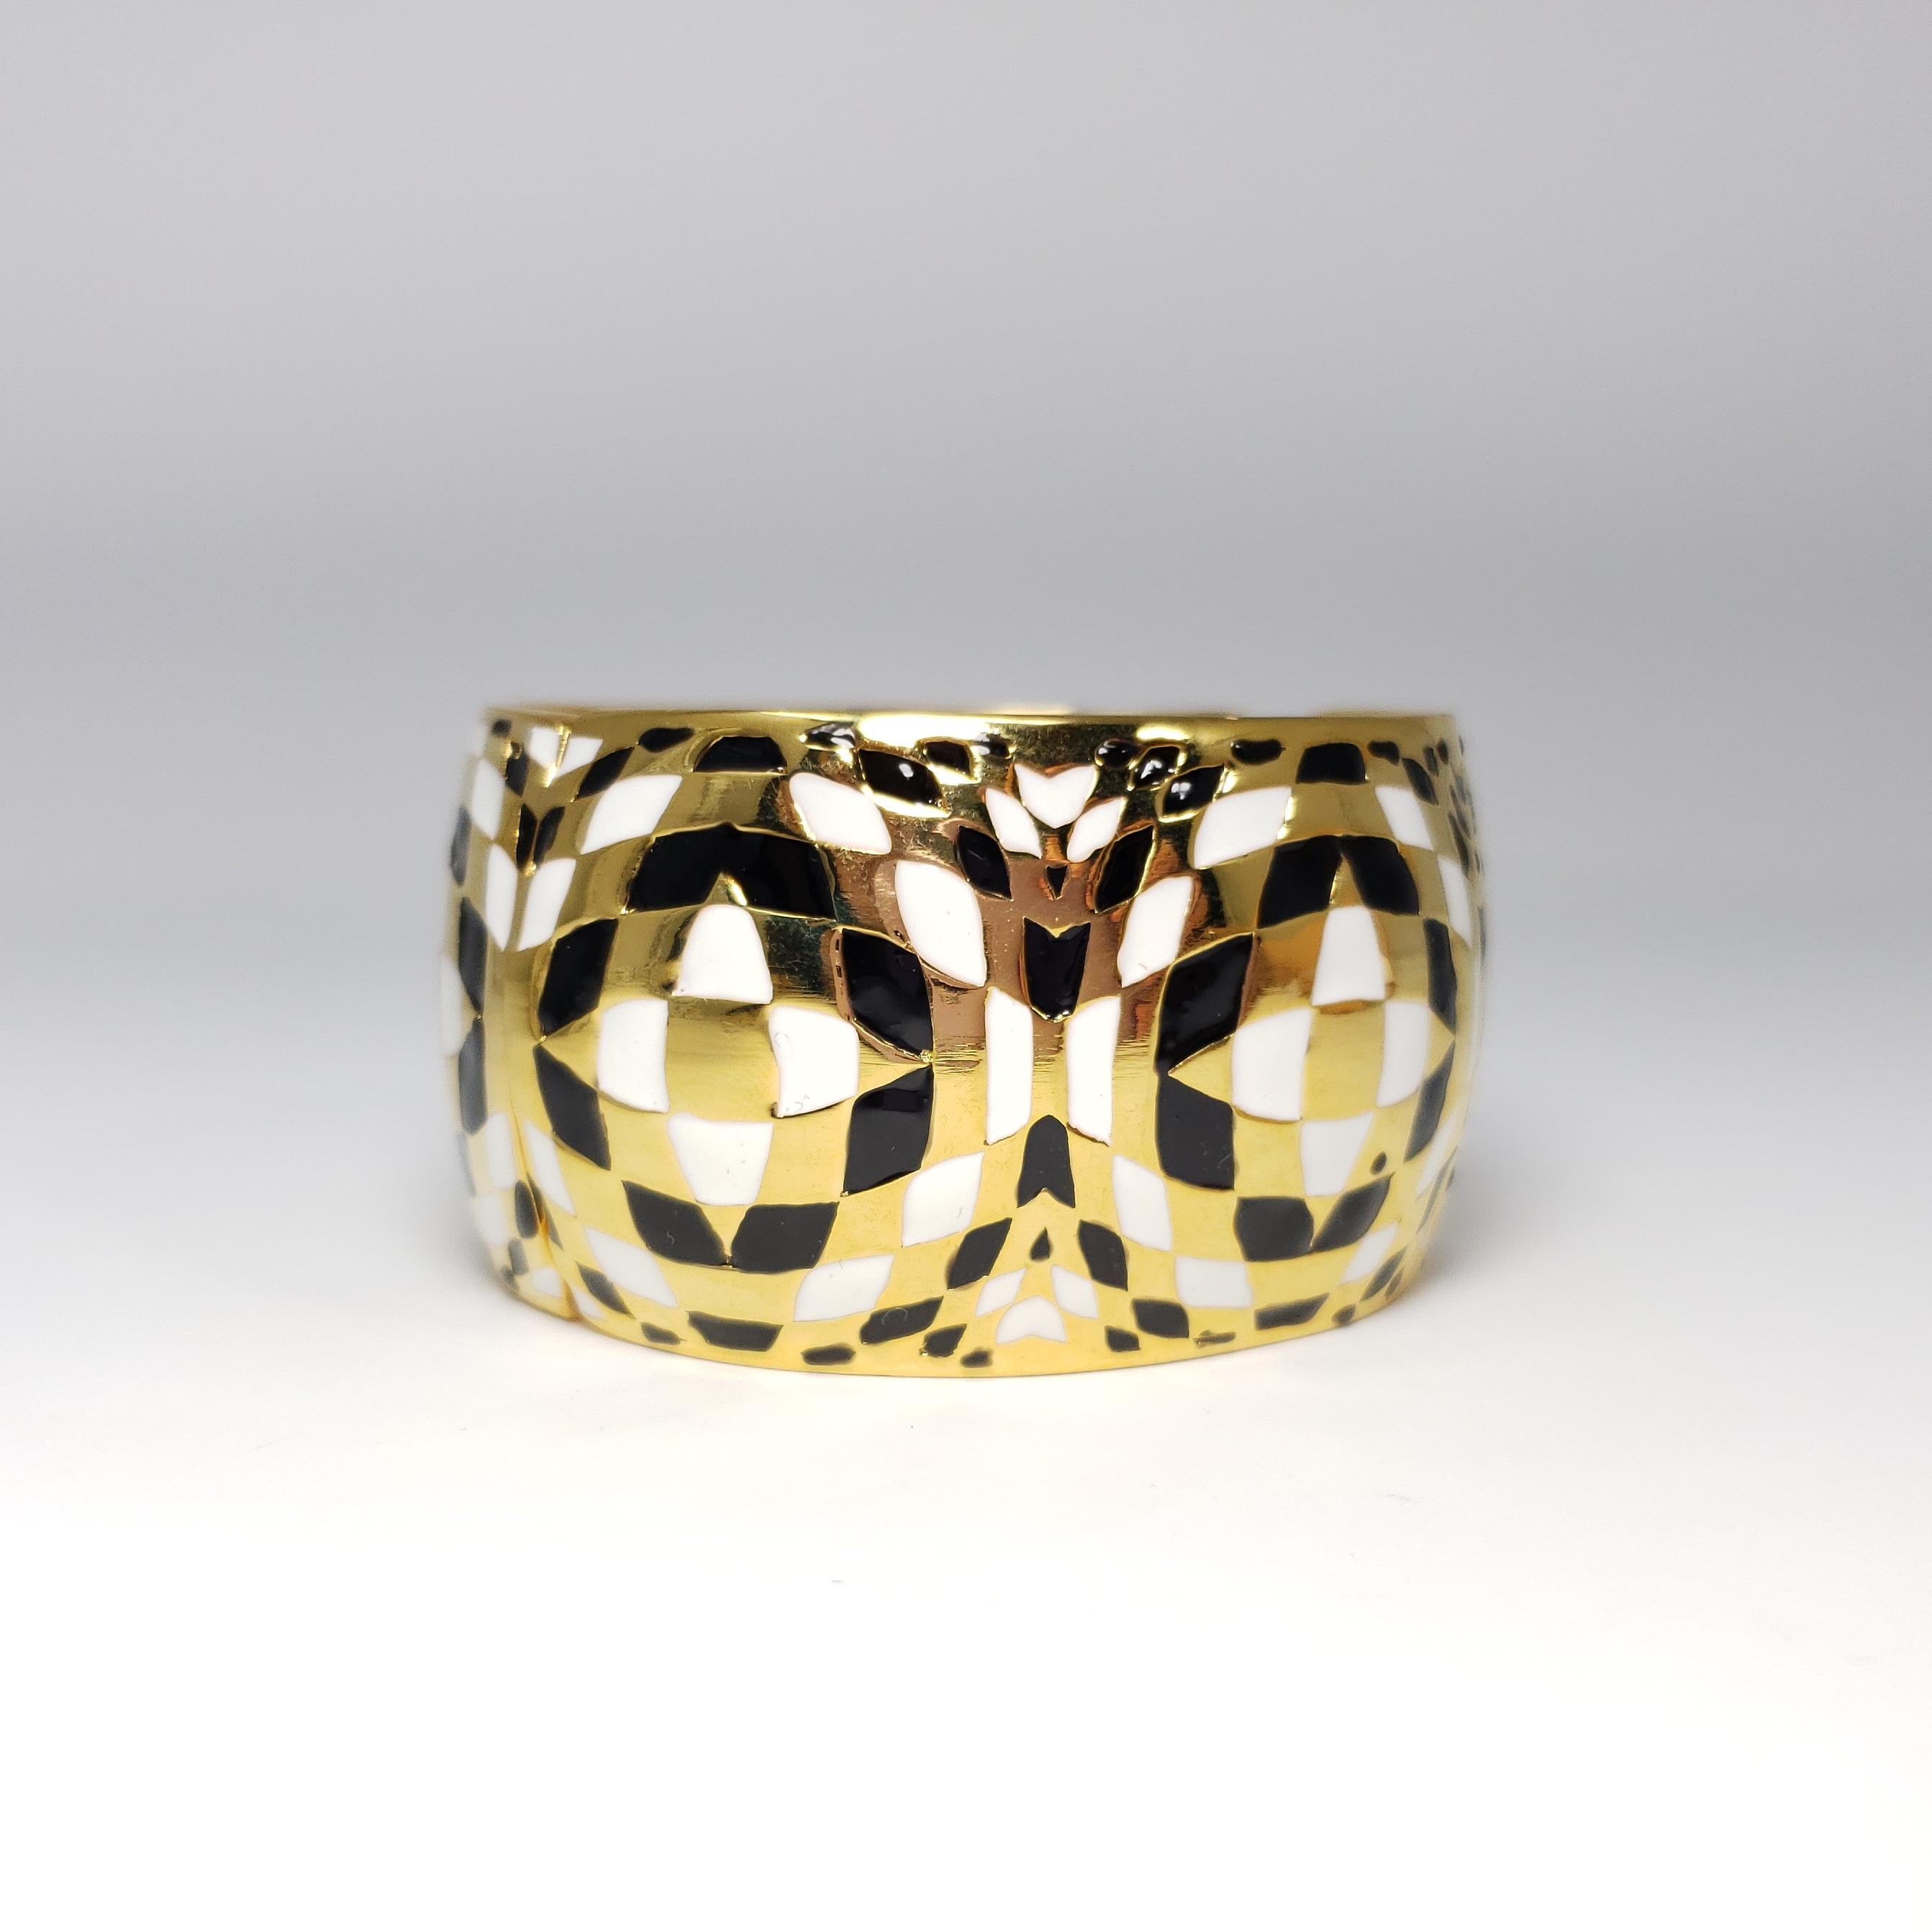 Un bracelet de Kenneth Jay Lane au motif léopard exotique. Les motifs en relief plaqués or sont rehaussés de cristaux colorés.

Hauteur : 3,6 cm / 1,4 in
Diamètre à la partie la plus large : 5,9 cm/ 2,34 in
Circonférence intérieure : 17,8 cm / 7 in